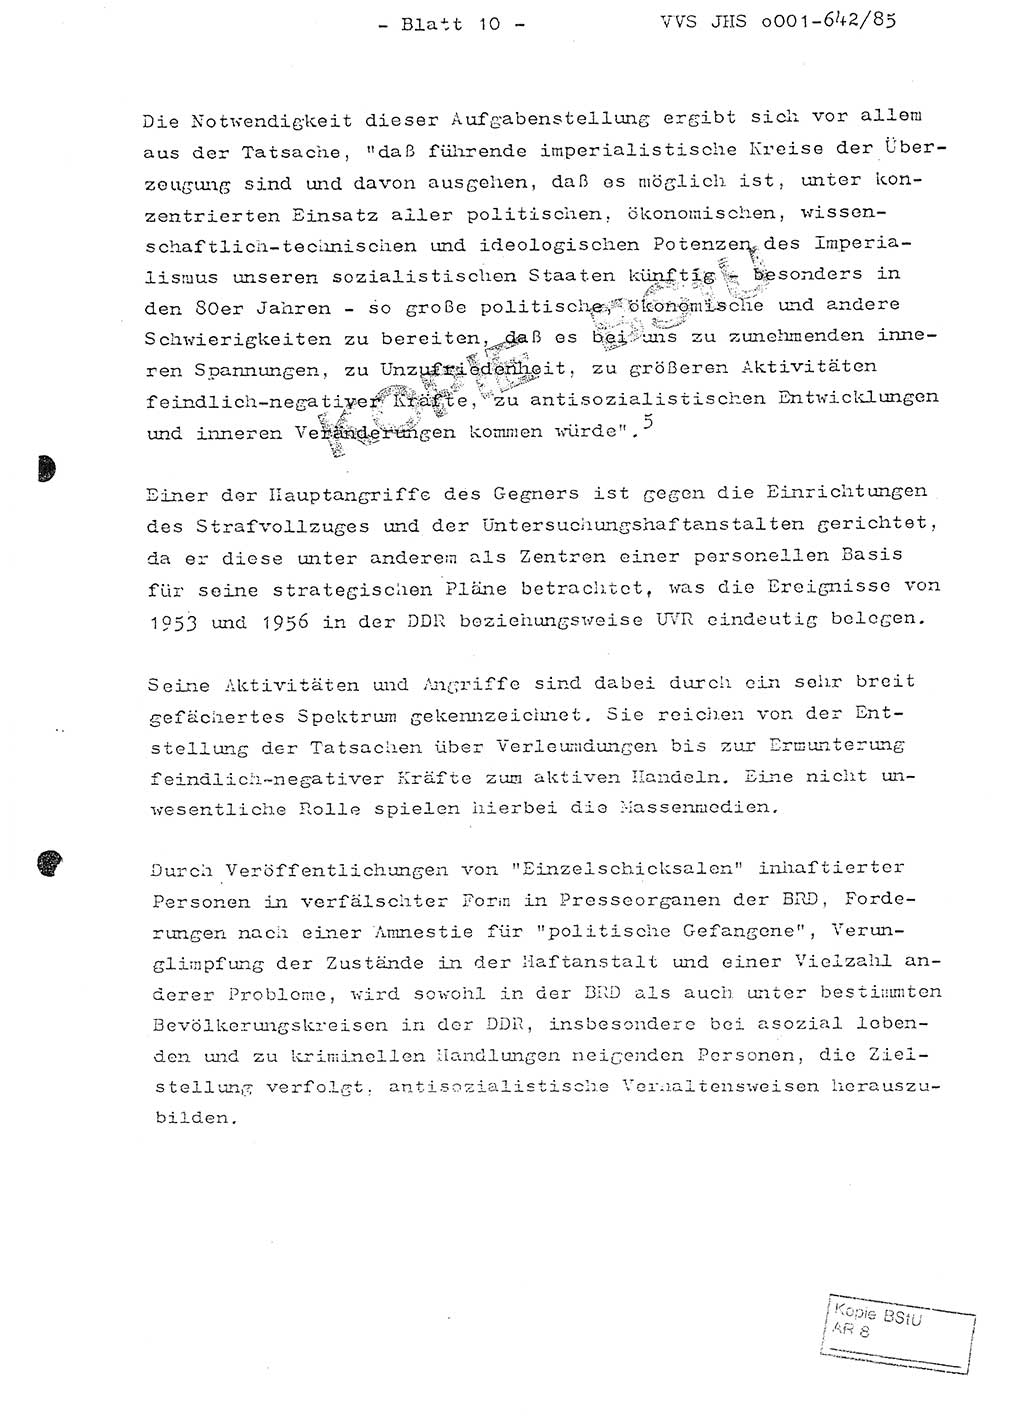 Fachschulabschlußarbeit Oberleutnant Lothar Fahland (Abt. ⅩⅣ), Ministerium für Staatssicherheit (MfS) [Deutsche Demokratische Republik (DDR)], Juristische Hochschule (JHS), Vertrauliche Verschlußsache (VVS) o001-642/85, Potsdam 1985, Blatt 10 (FS-Abschl.-Arb. MfS DDR JHS VVS o001-642/85 1985, Bl. 10)